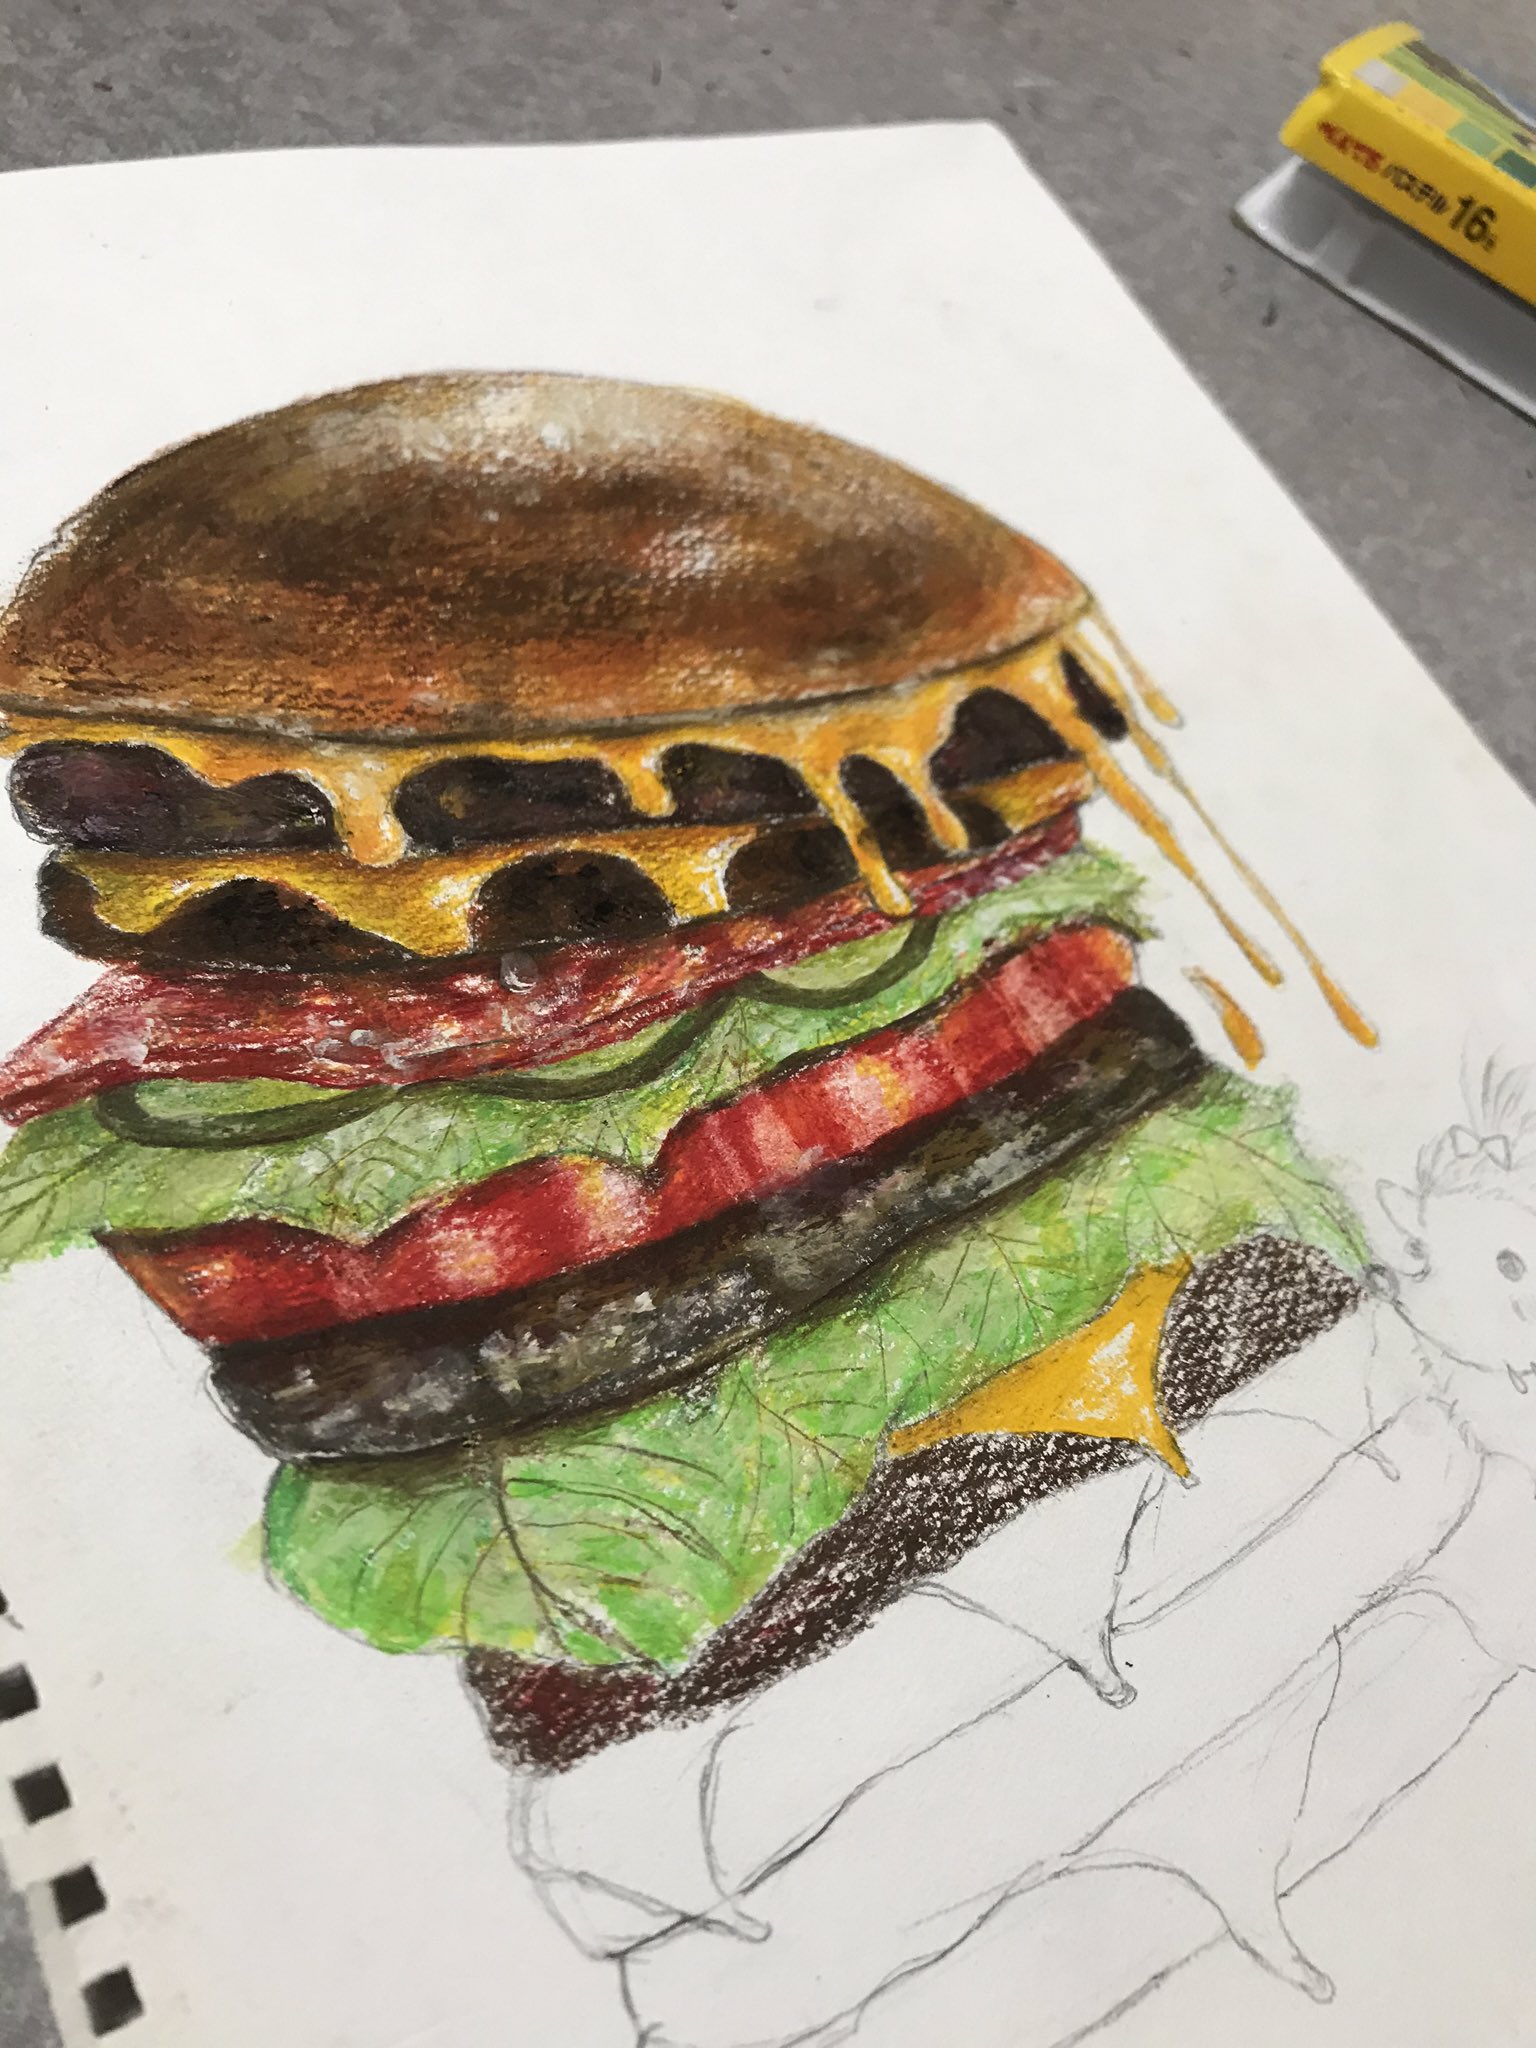 Minamike お腹空いてくる 色鉛筆 絵描きさんと繋がりたい ハンバーガー ハンバーガーイラスト 手書き イラスト ハリネズミ T Co Ac8esidhjq Twitter